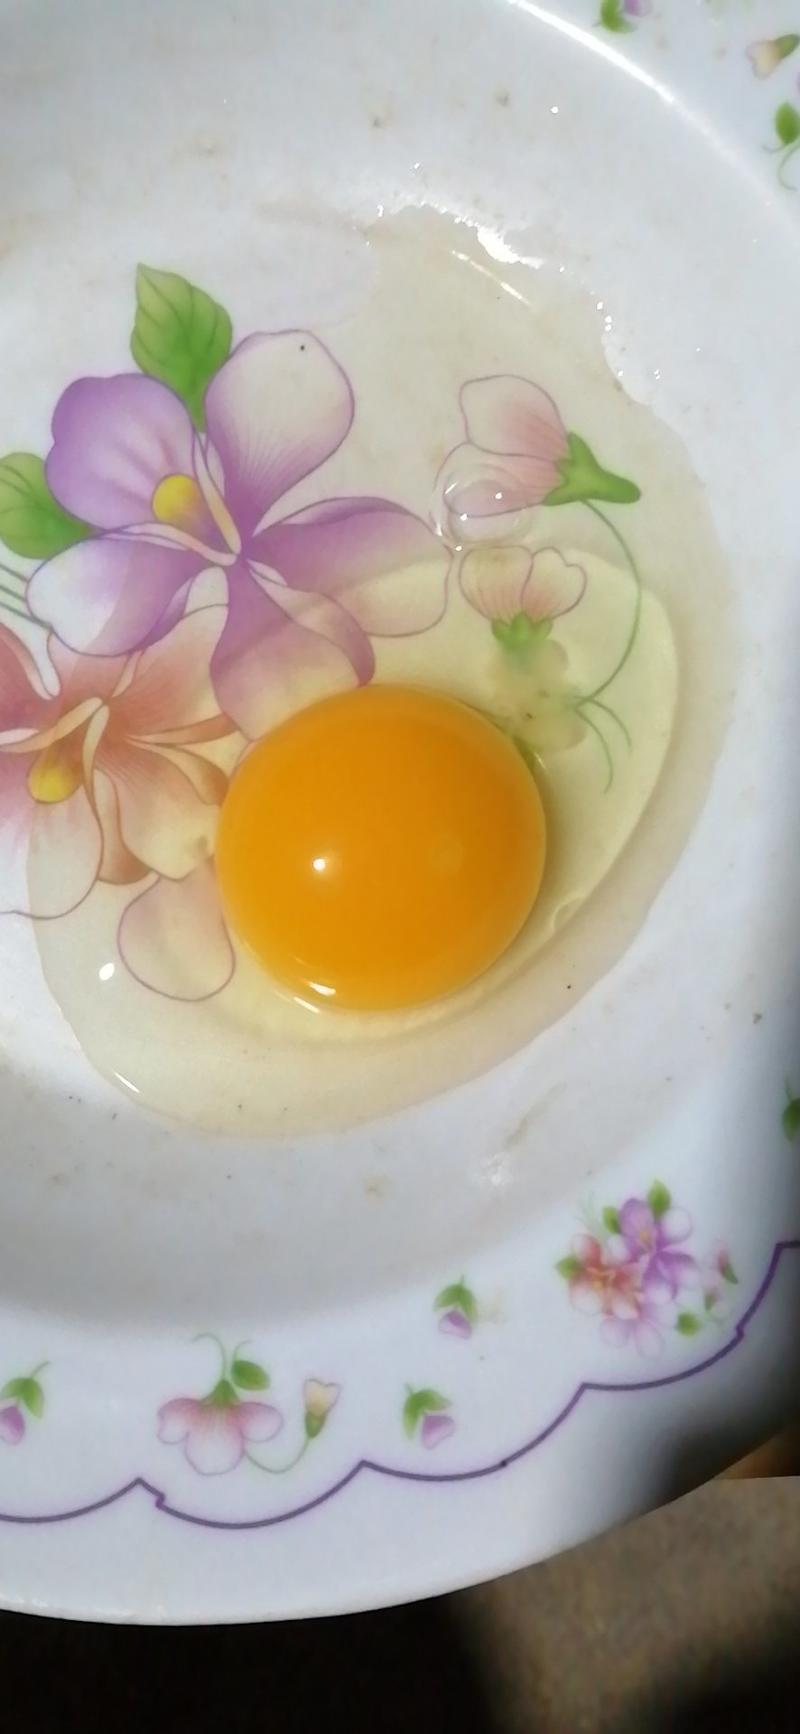 土鸡蛋长寿之乡钟祥本地农家散养新鲜粉绿混装土鸡蛋。初生蛋